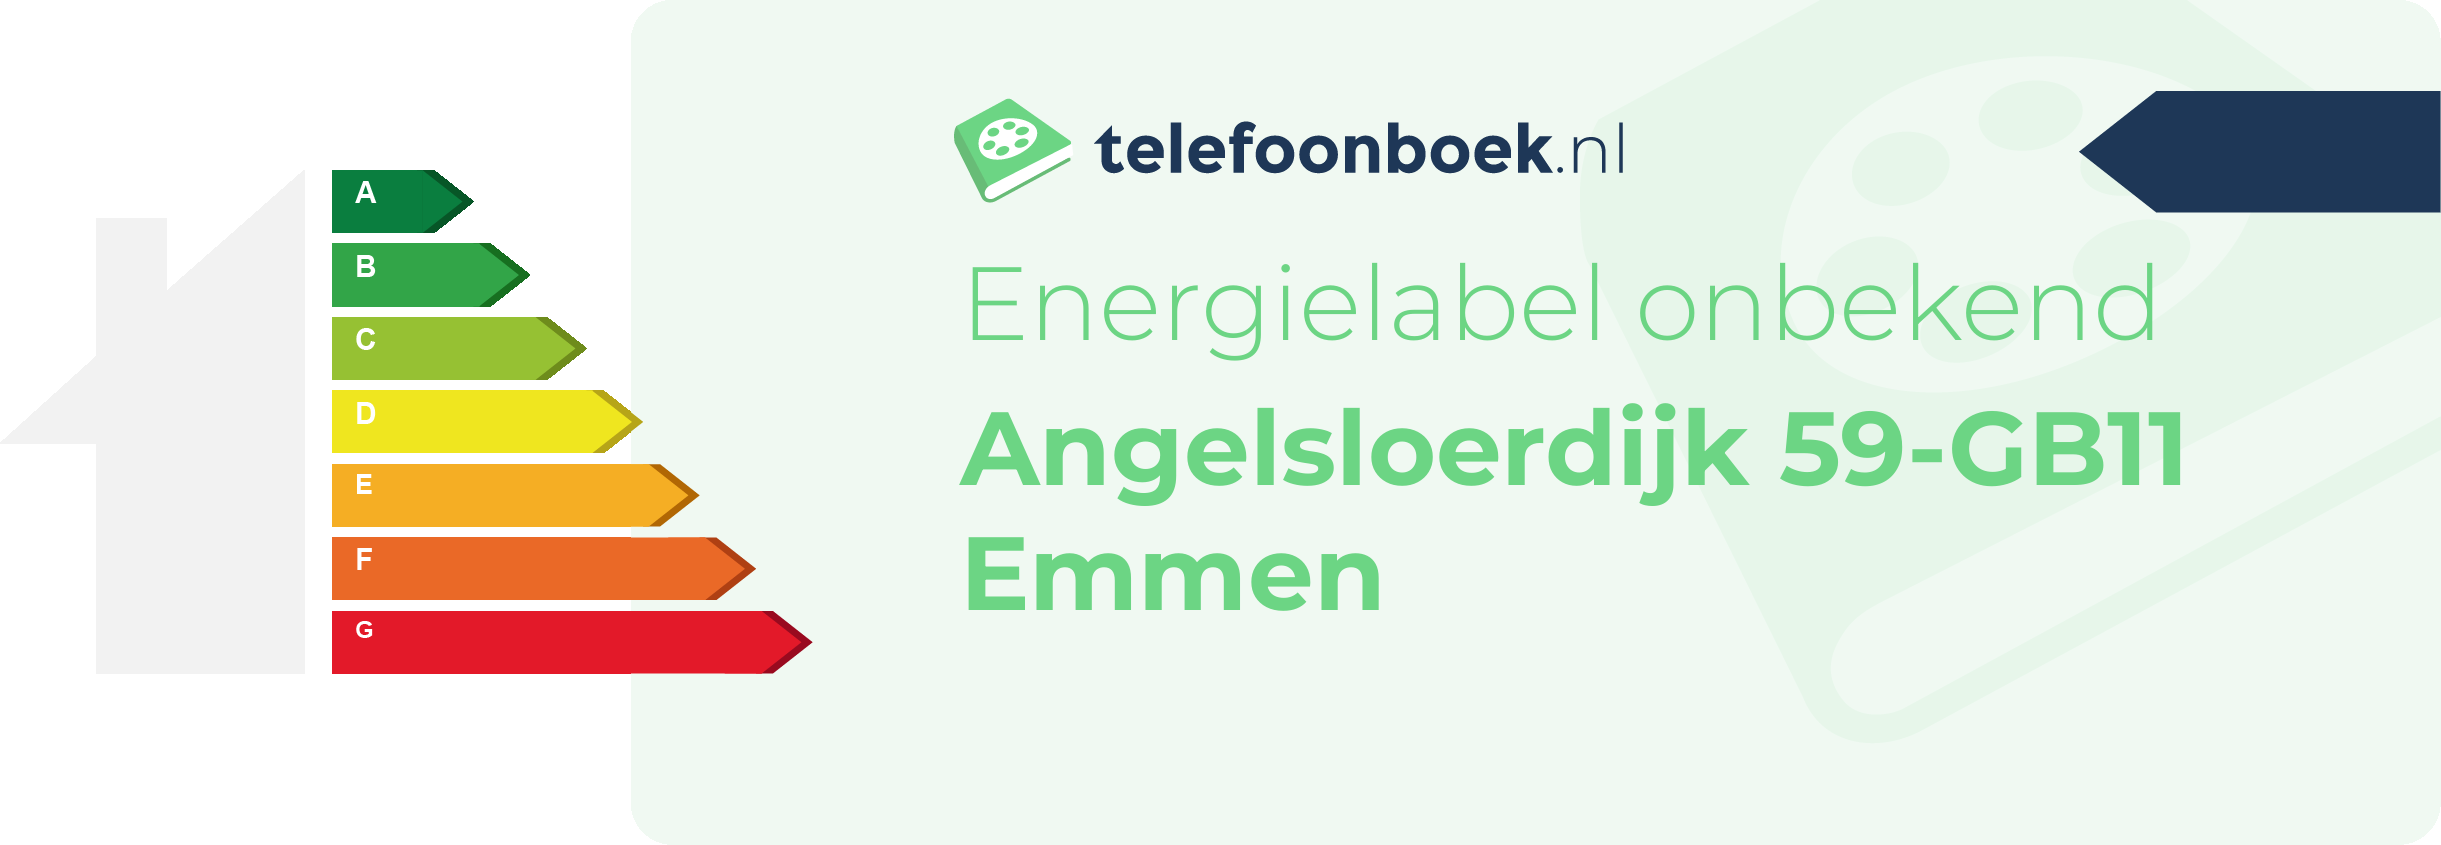 Energielabel Angelsloerdijk 59-GB11 Emmen